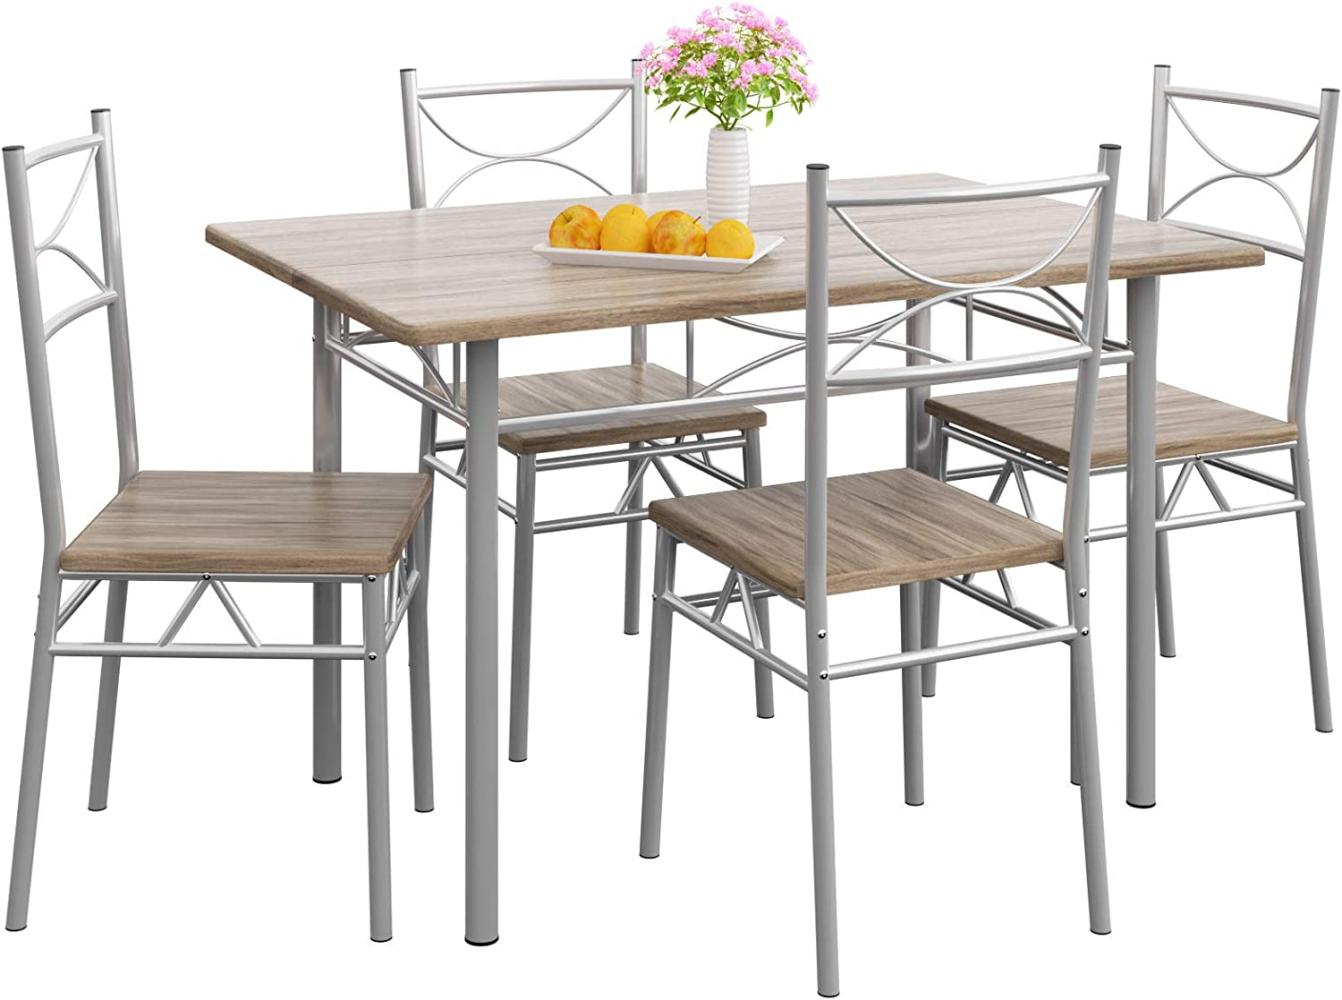 Casaria 5 TLG Sitzgruppe Paul Esstisch mit 4 Stühlen Eiche für Esszimmer Küche Essgruppe Küchentisch Tisch Stuhl Set Bild 1